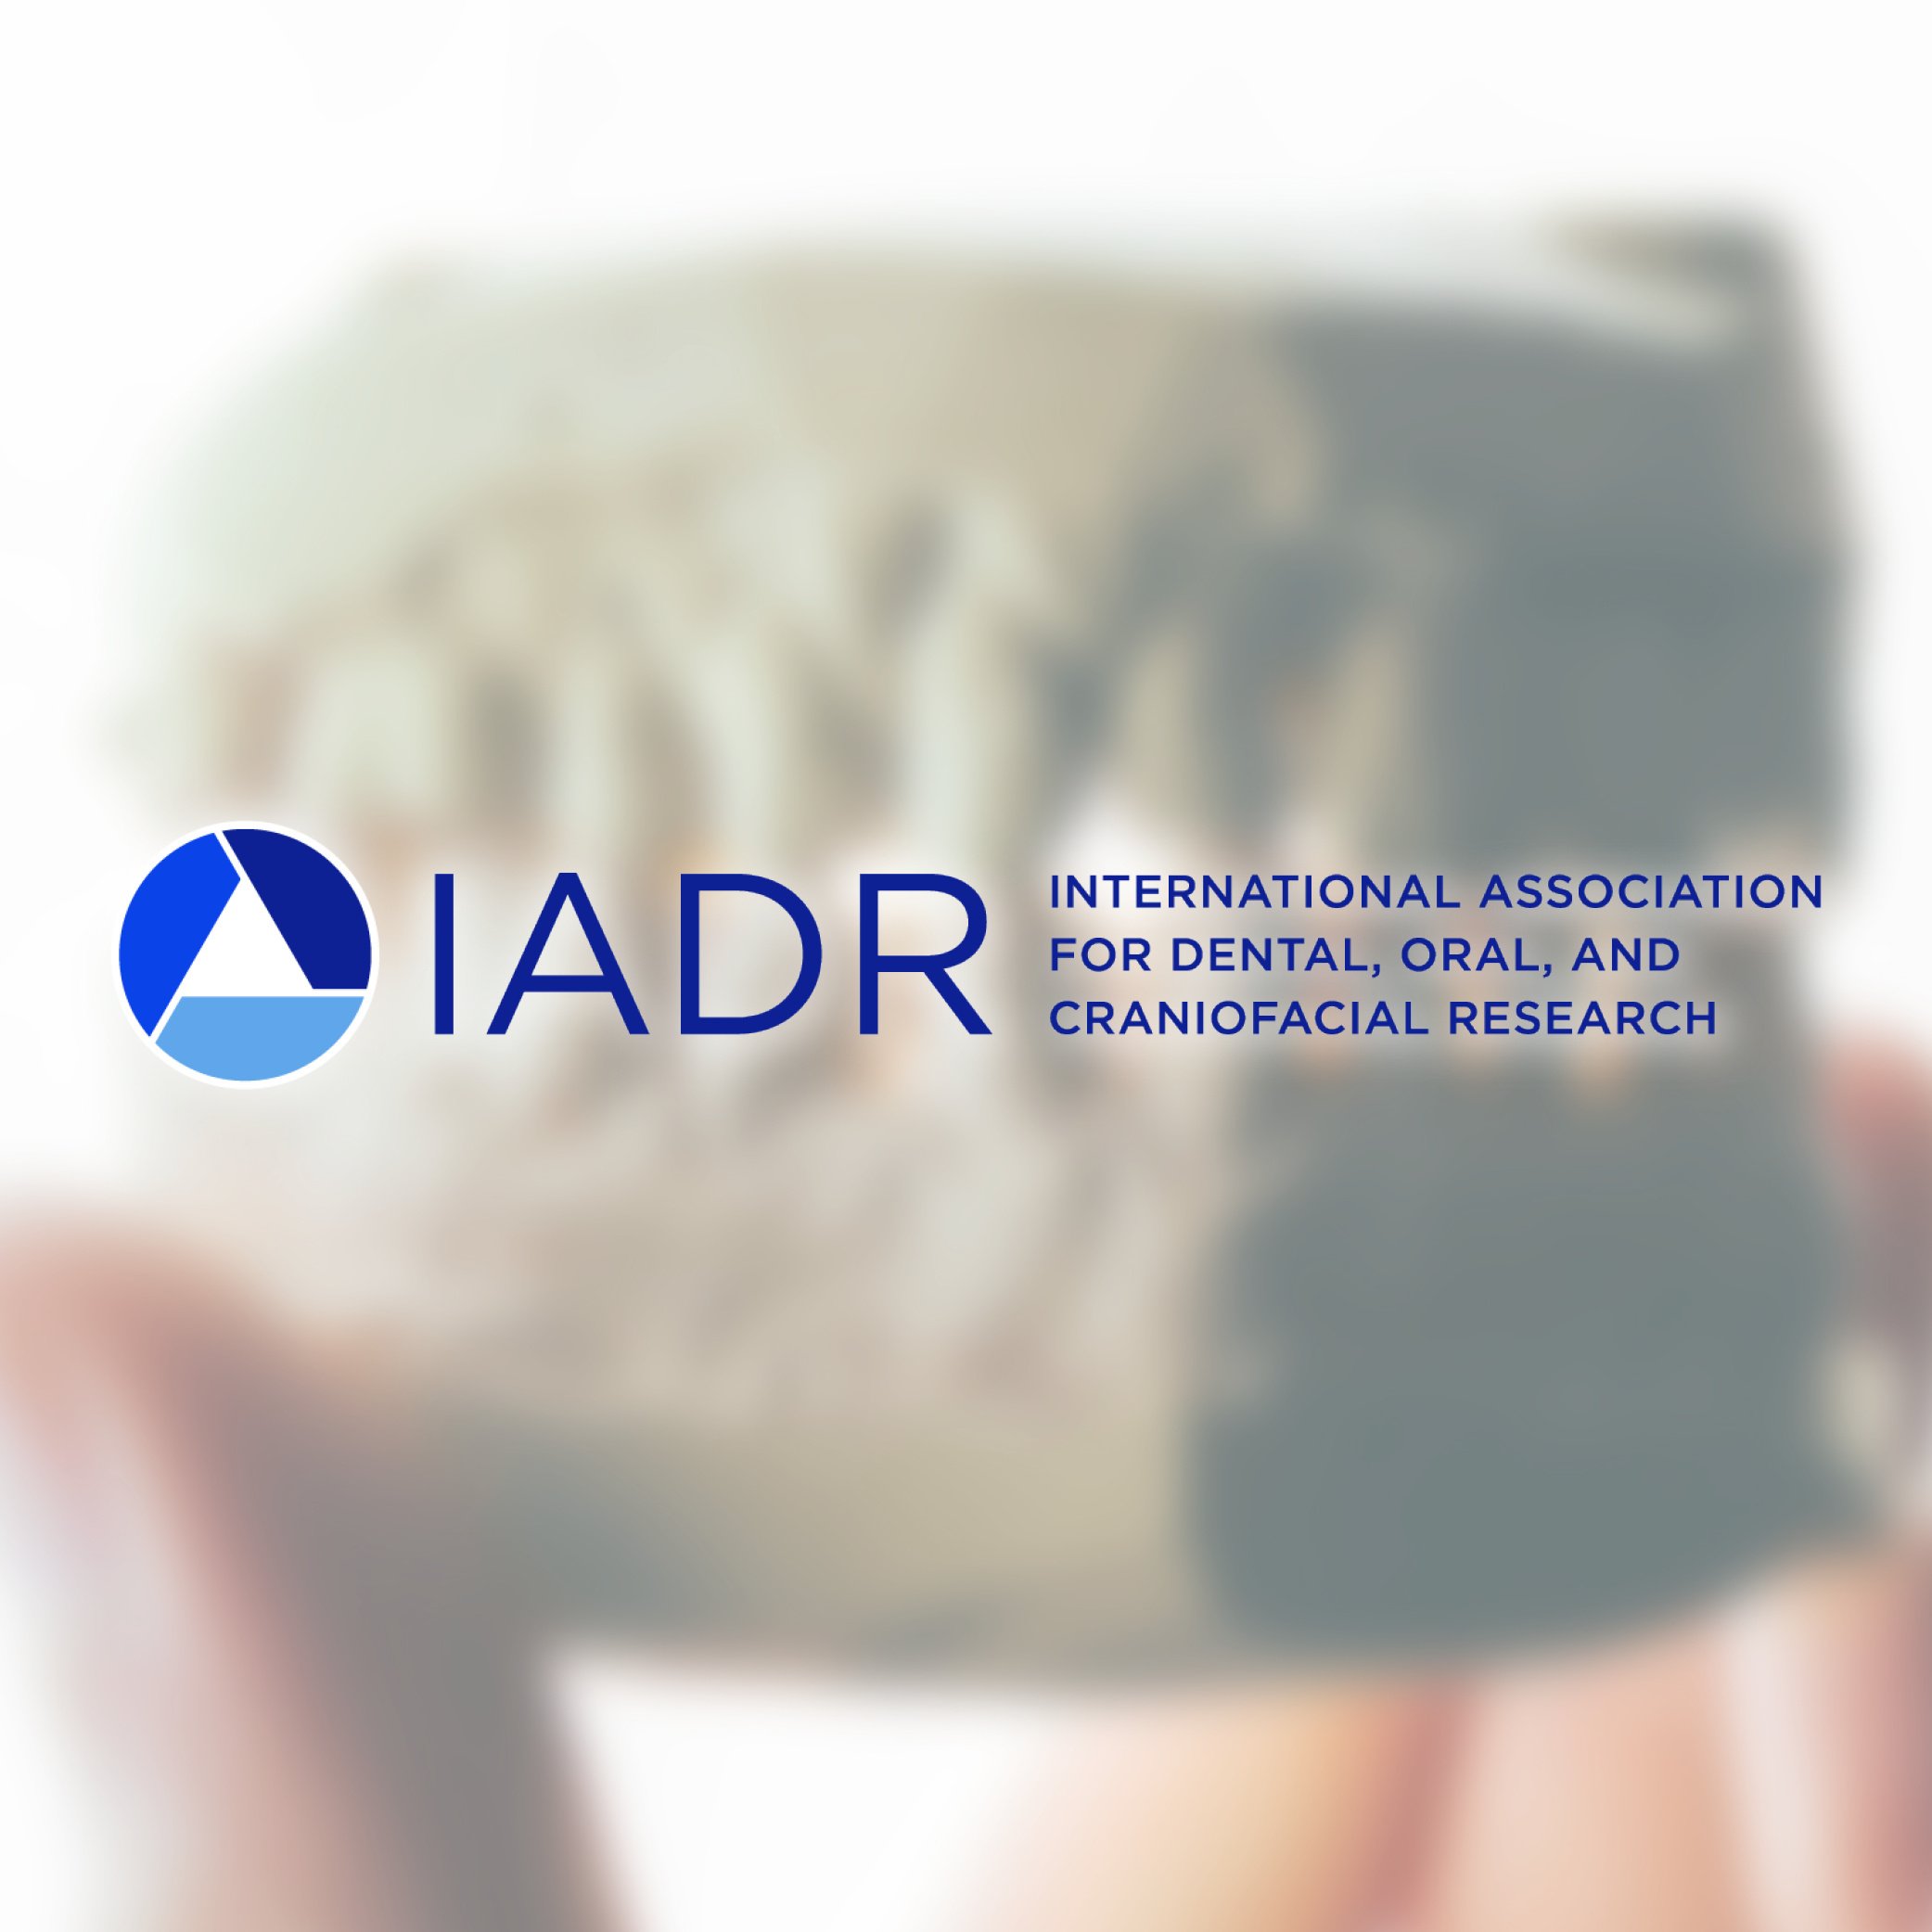 International Association for Dental Research (IADR)